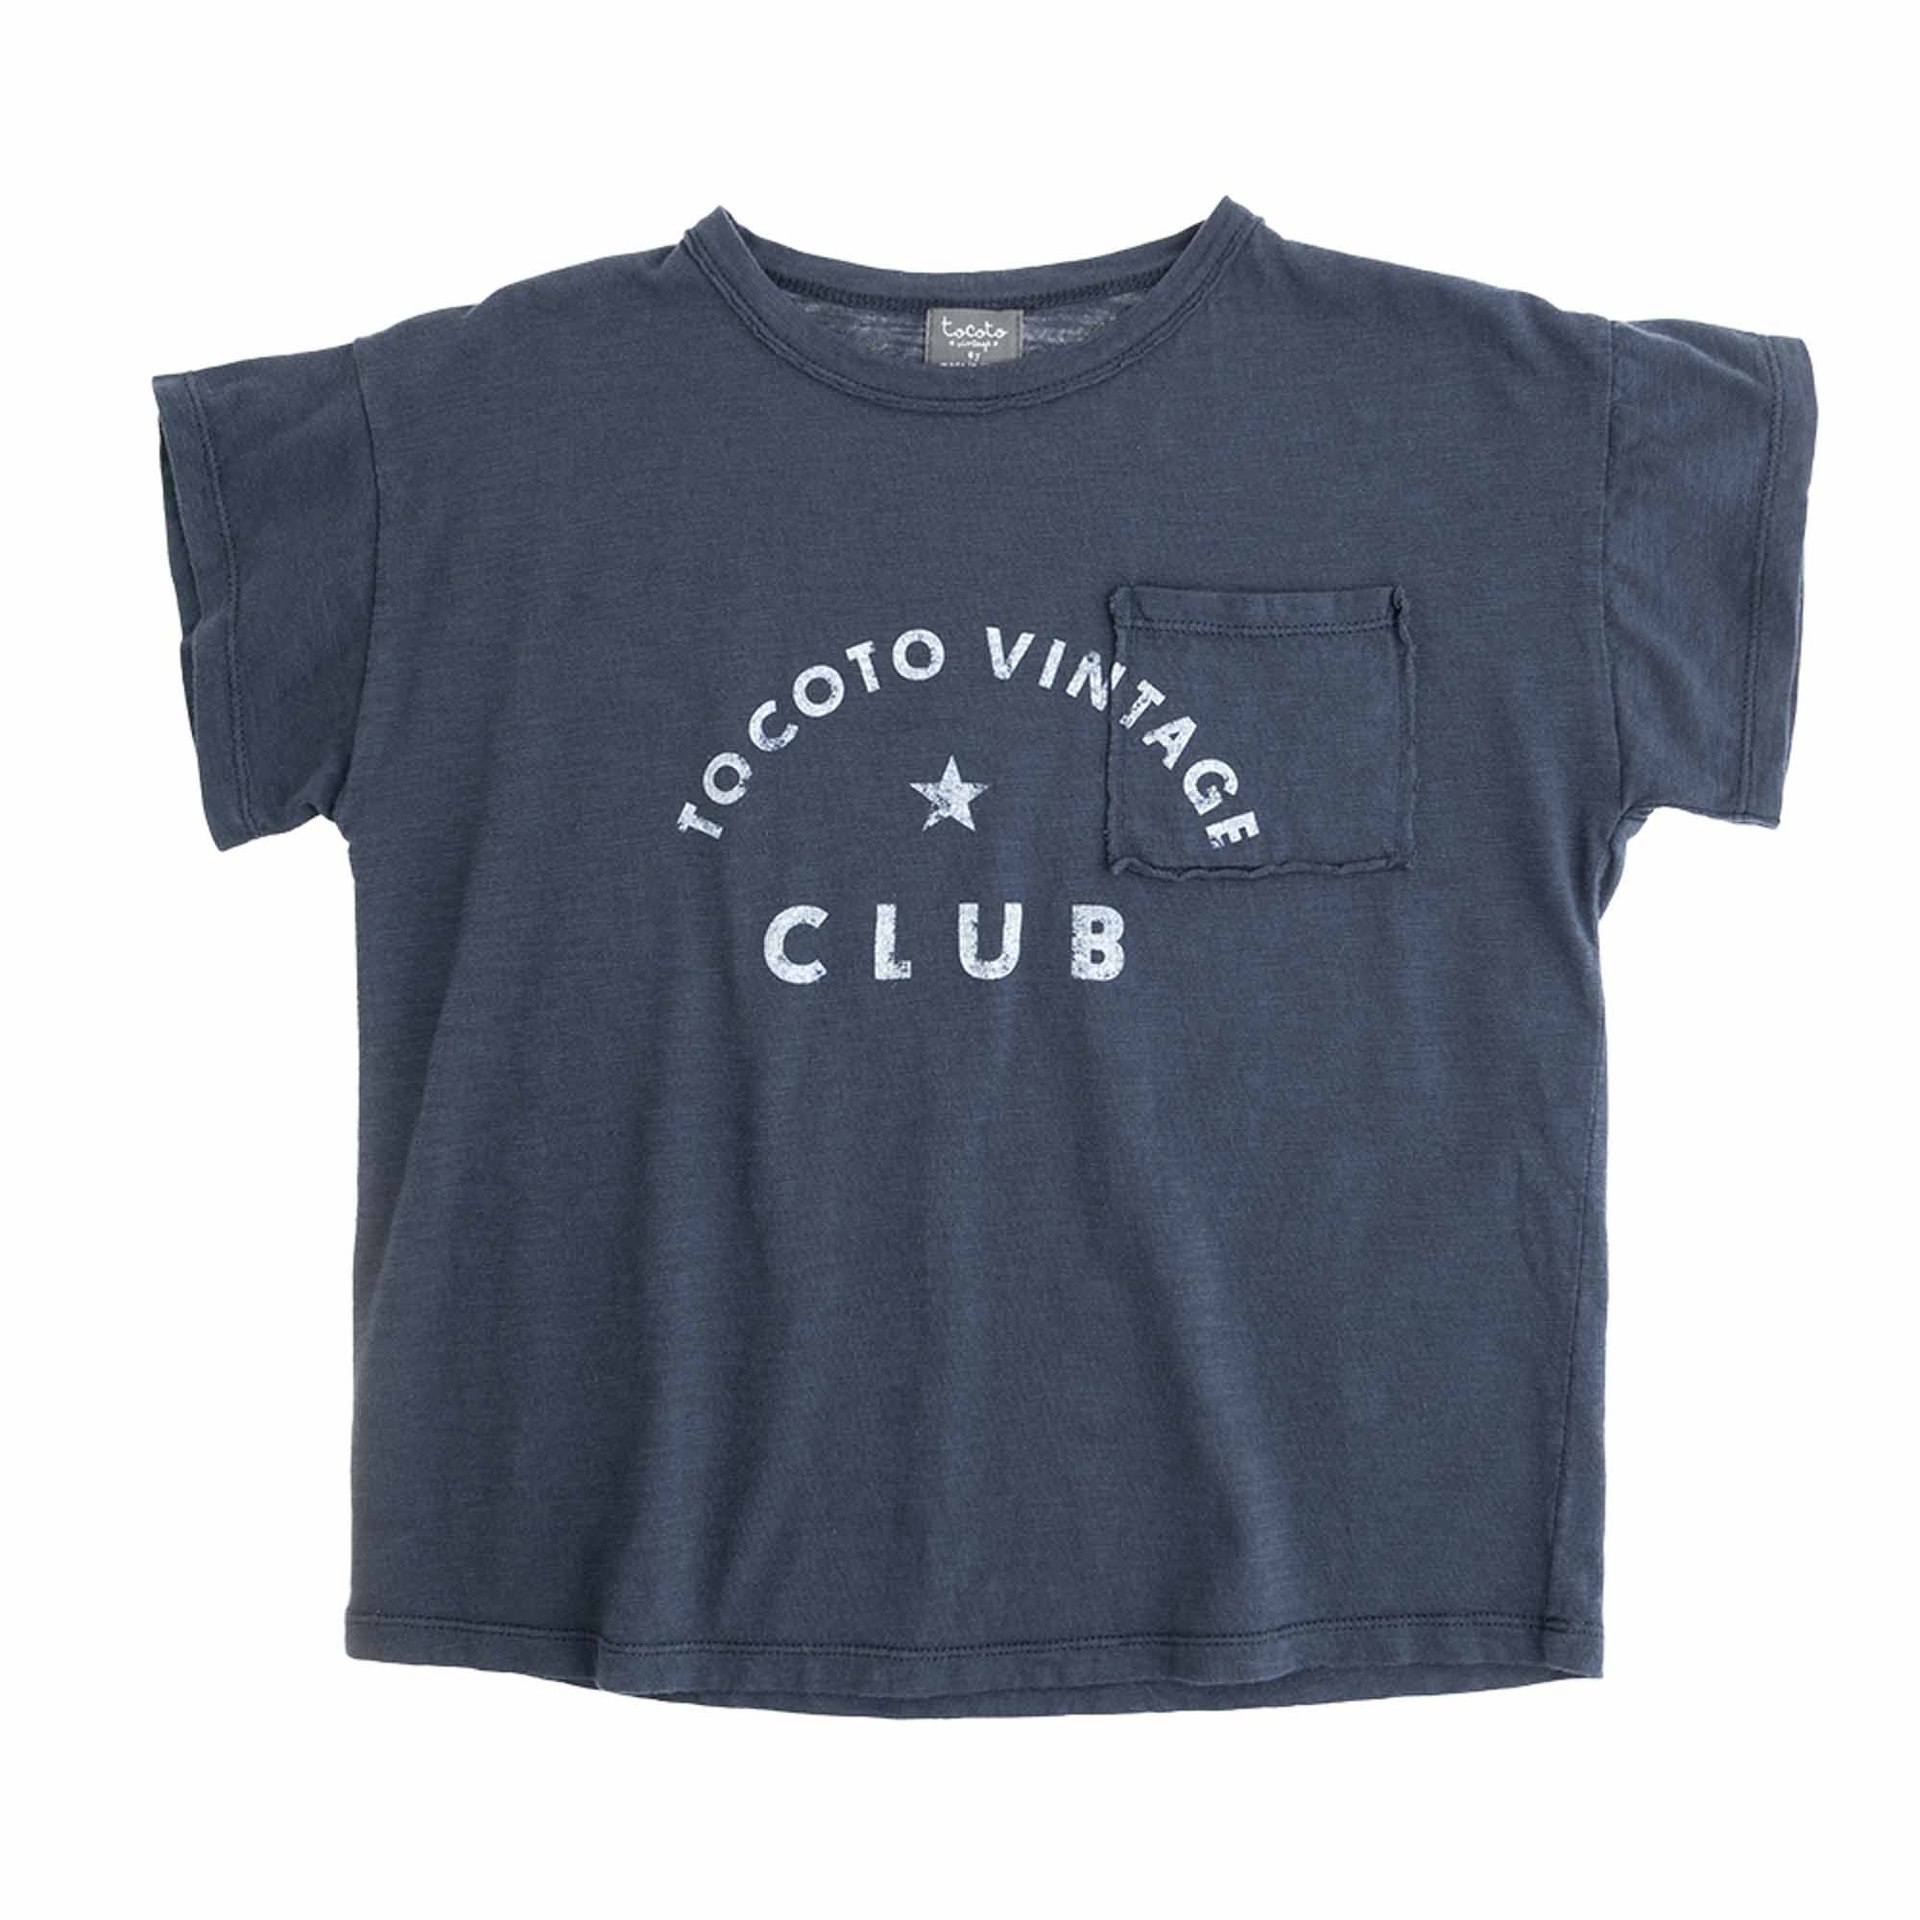 T - shirt Tocoto Vintage Club